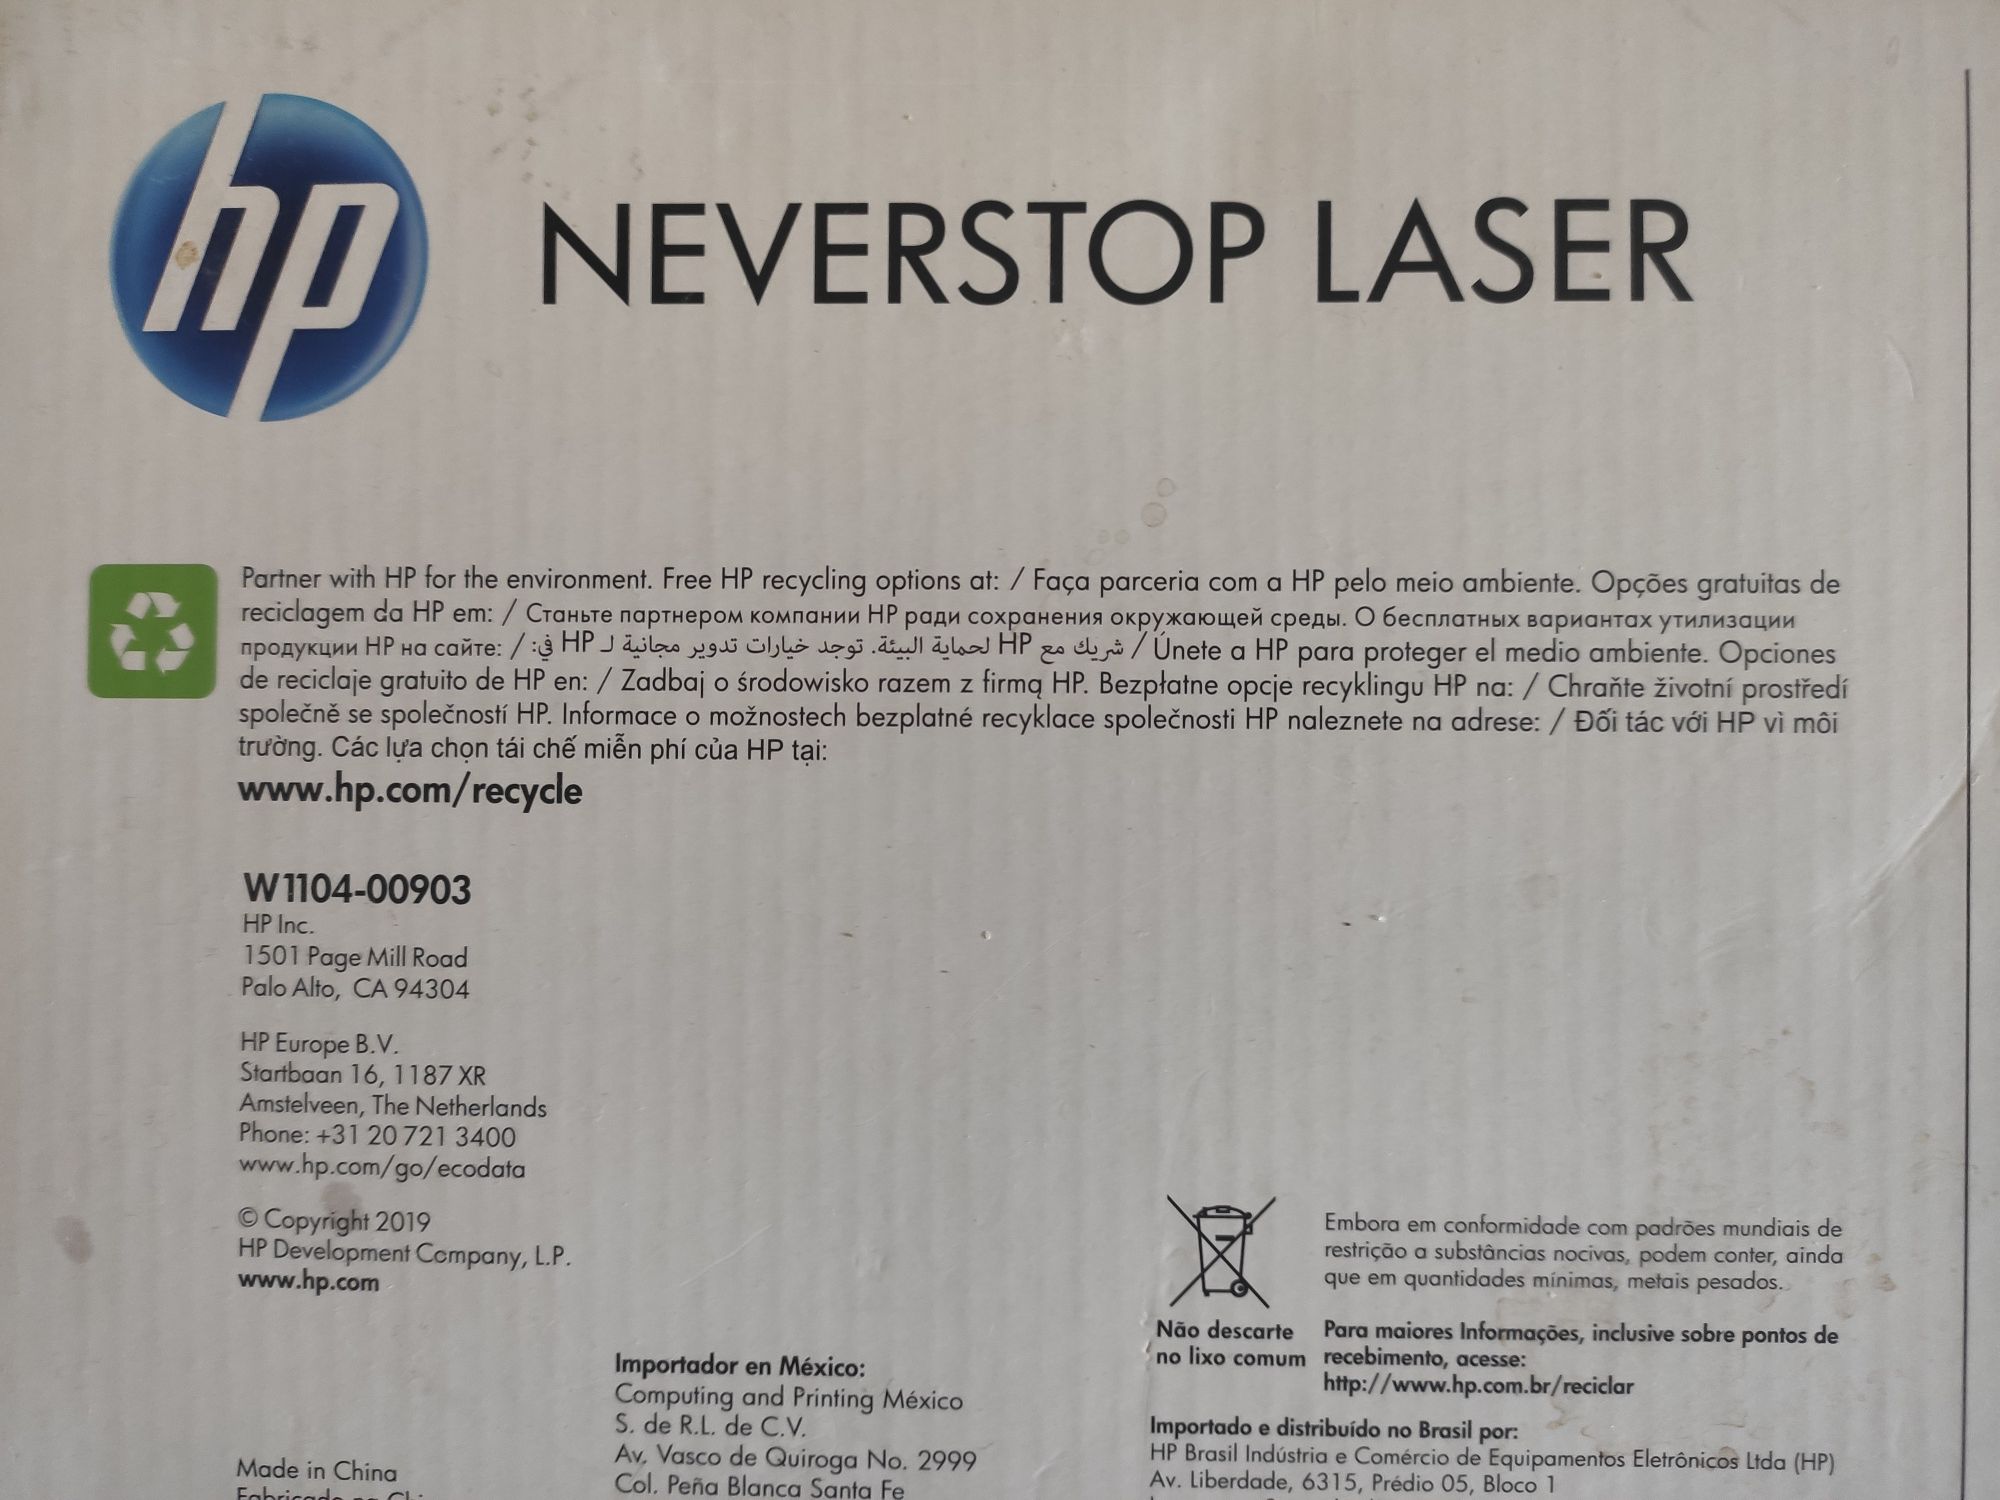 HP Neverstop Laser 104A